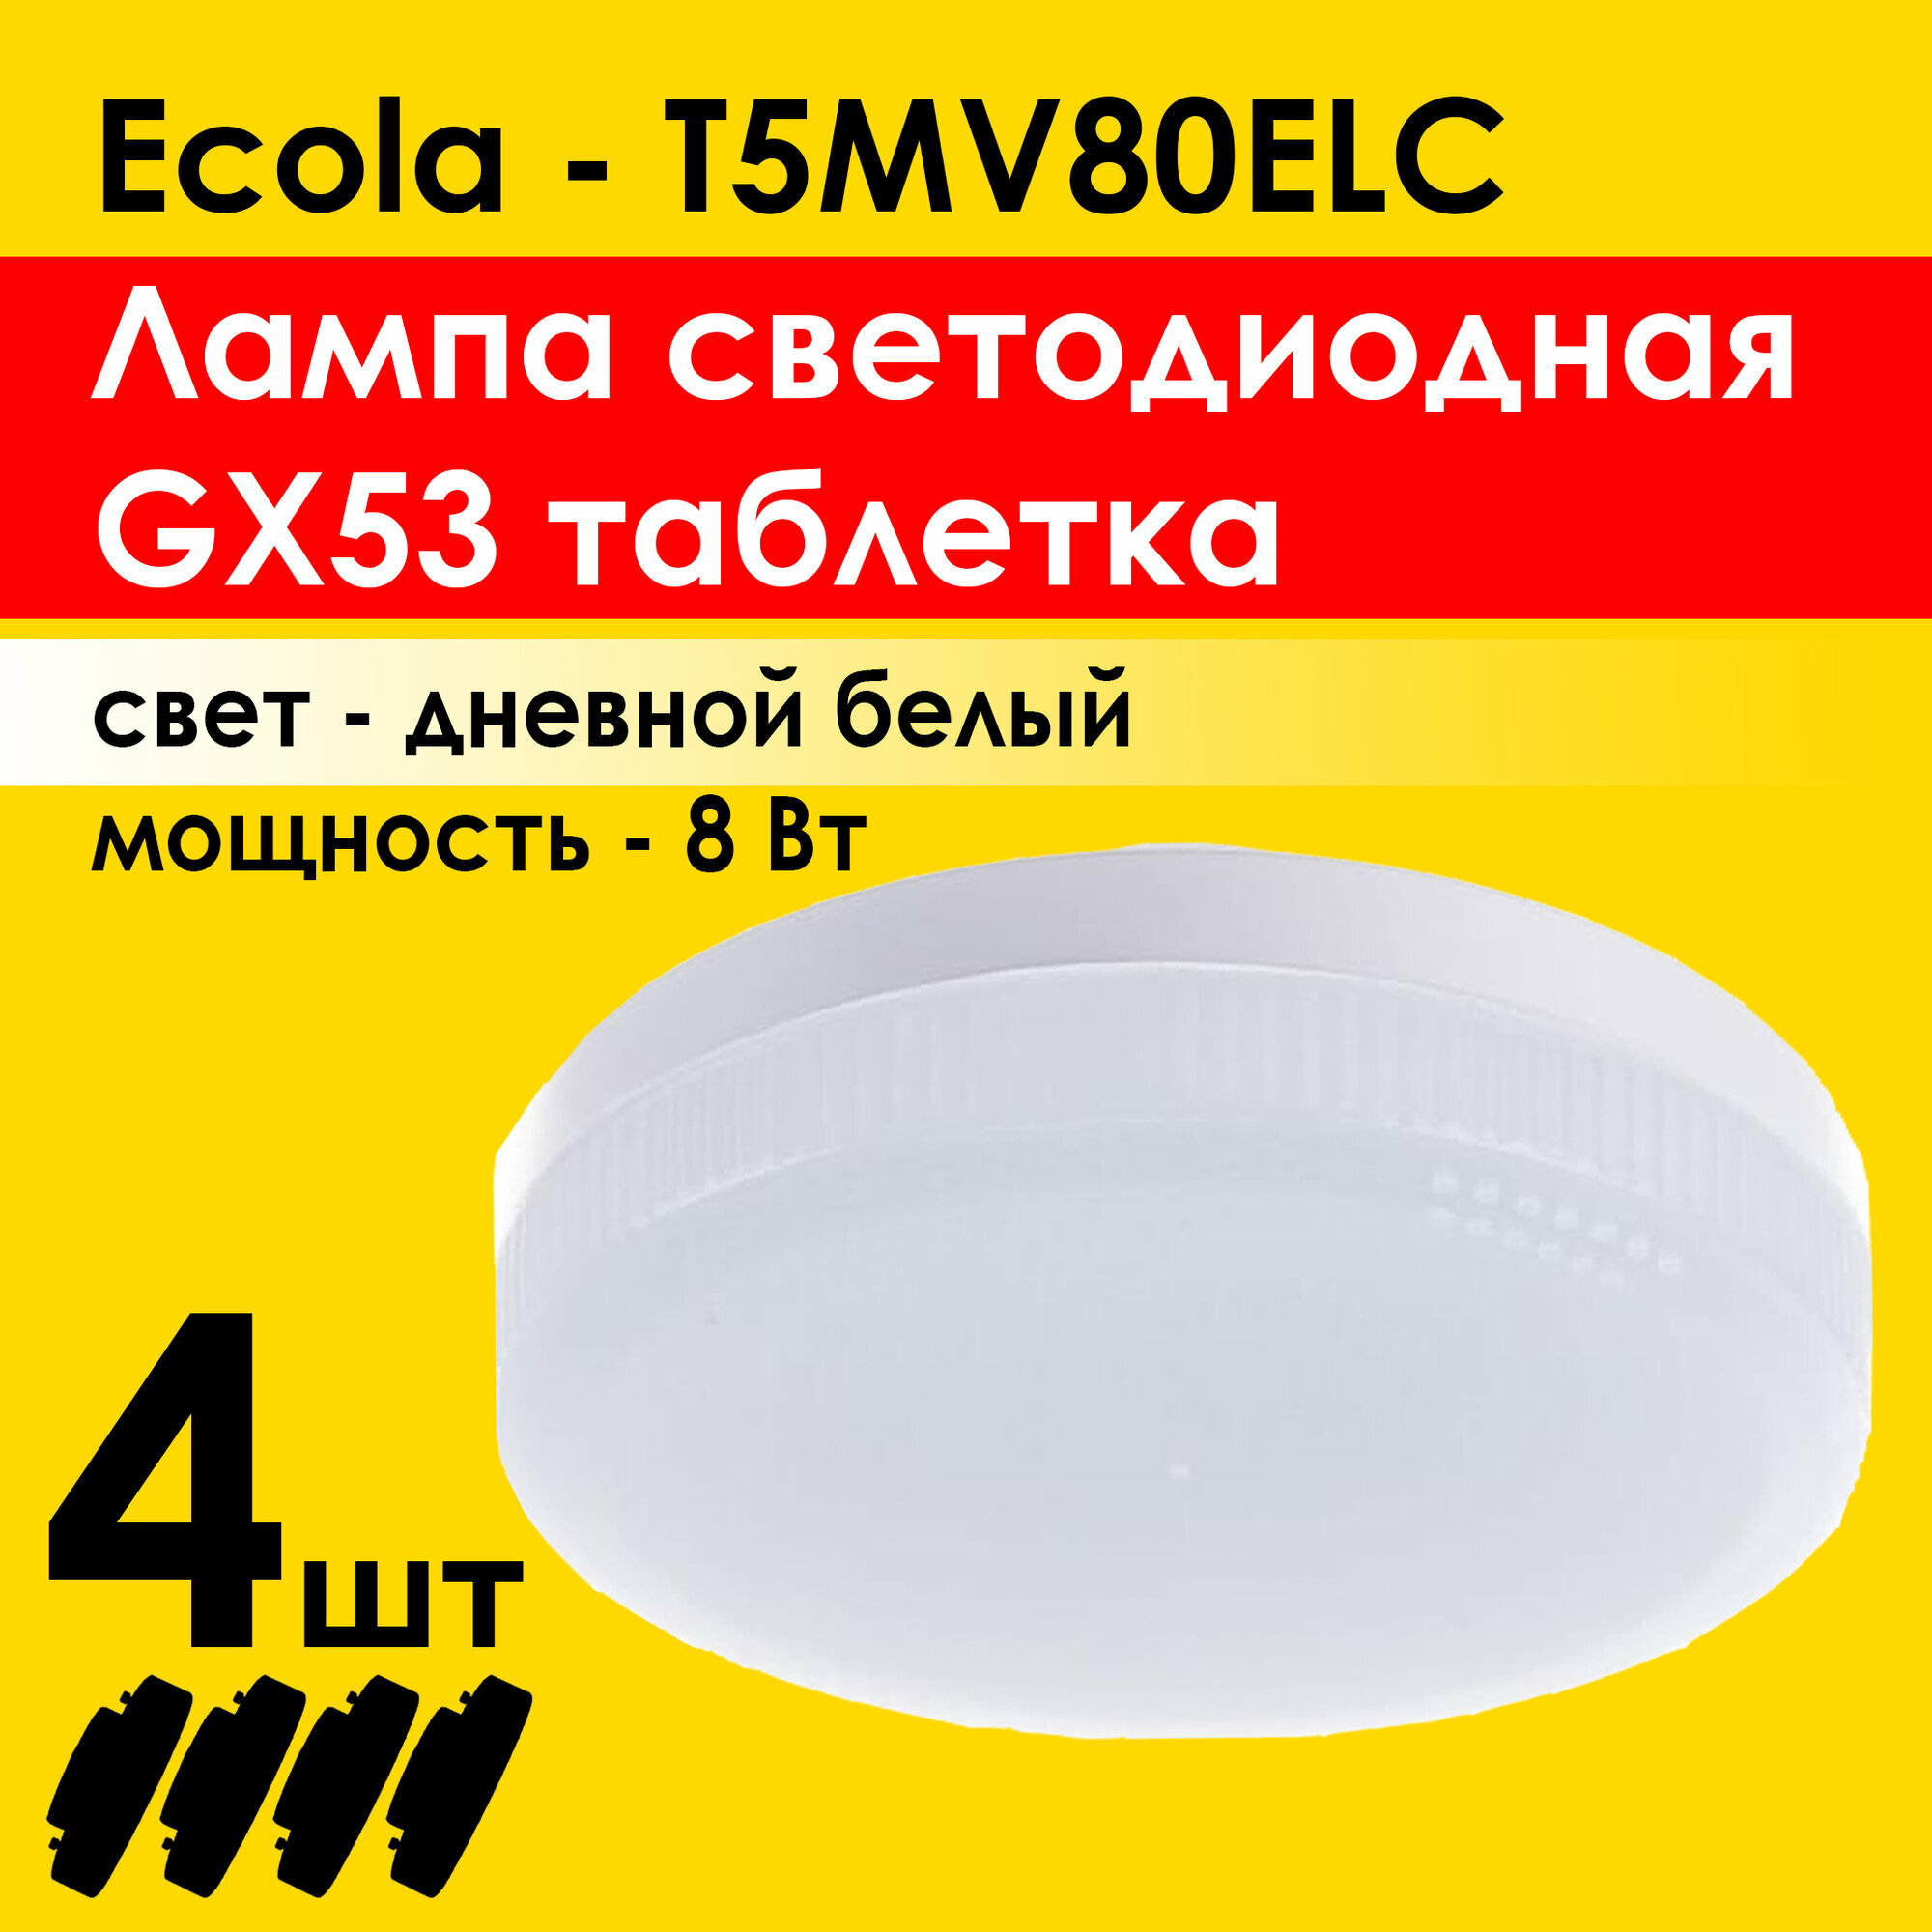 Лампочка светодиодная (4штуки) Ecola Light GX53 LED. Мощность 8,0W 4200K (T5MV80ELC)